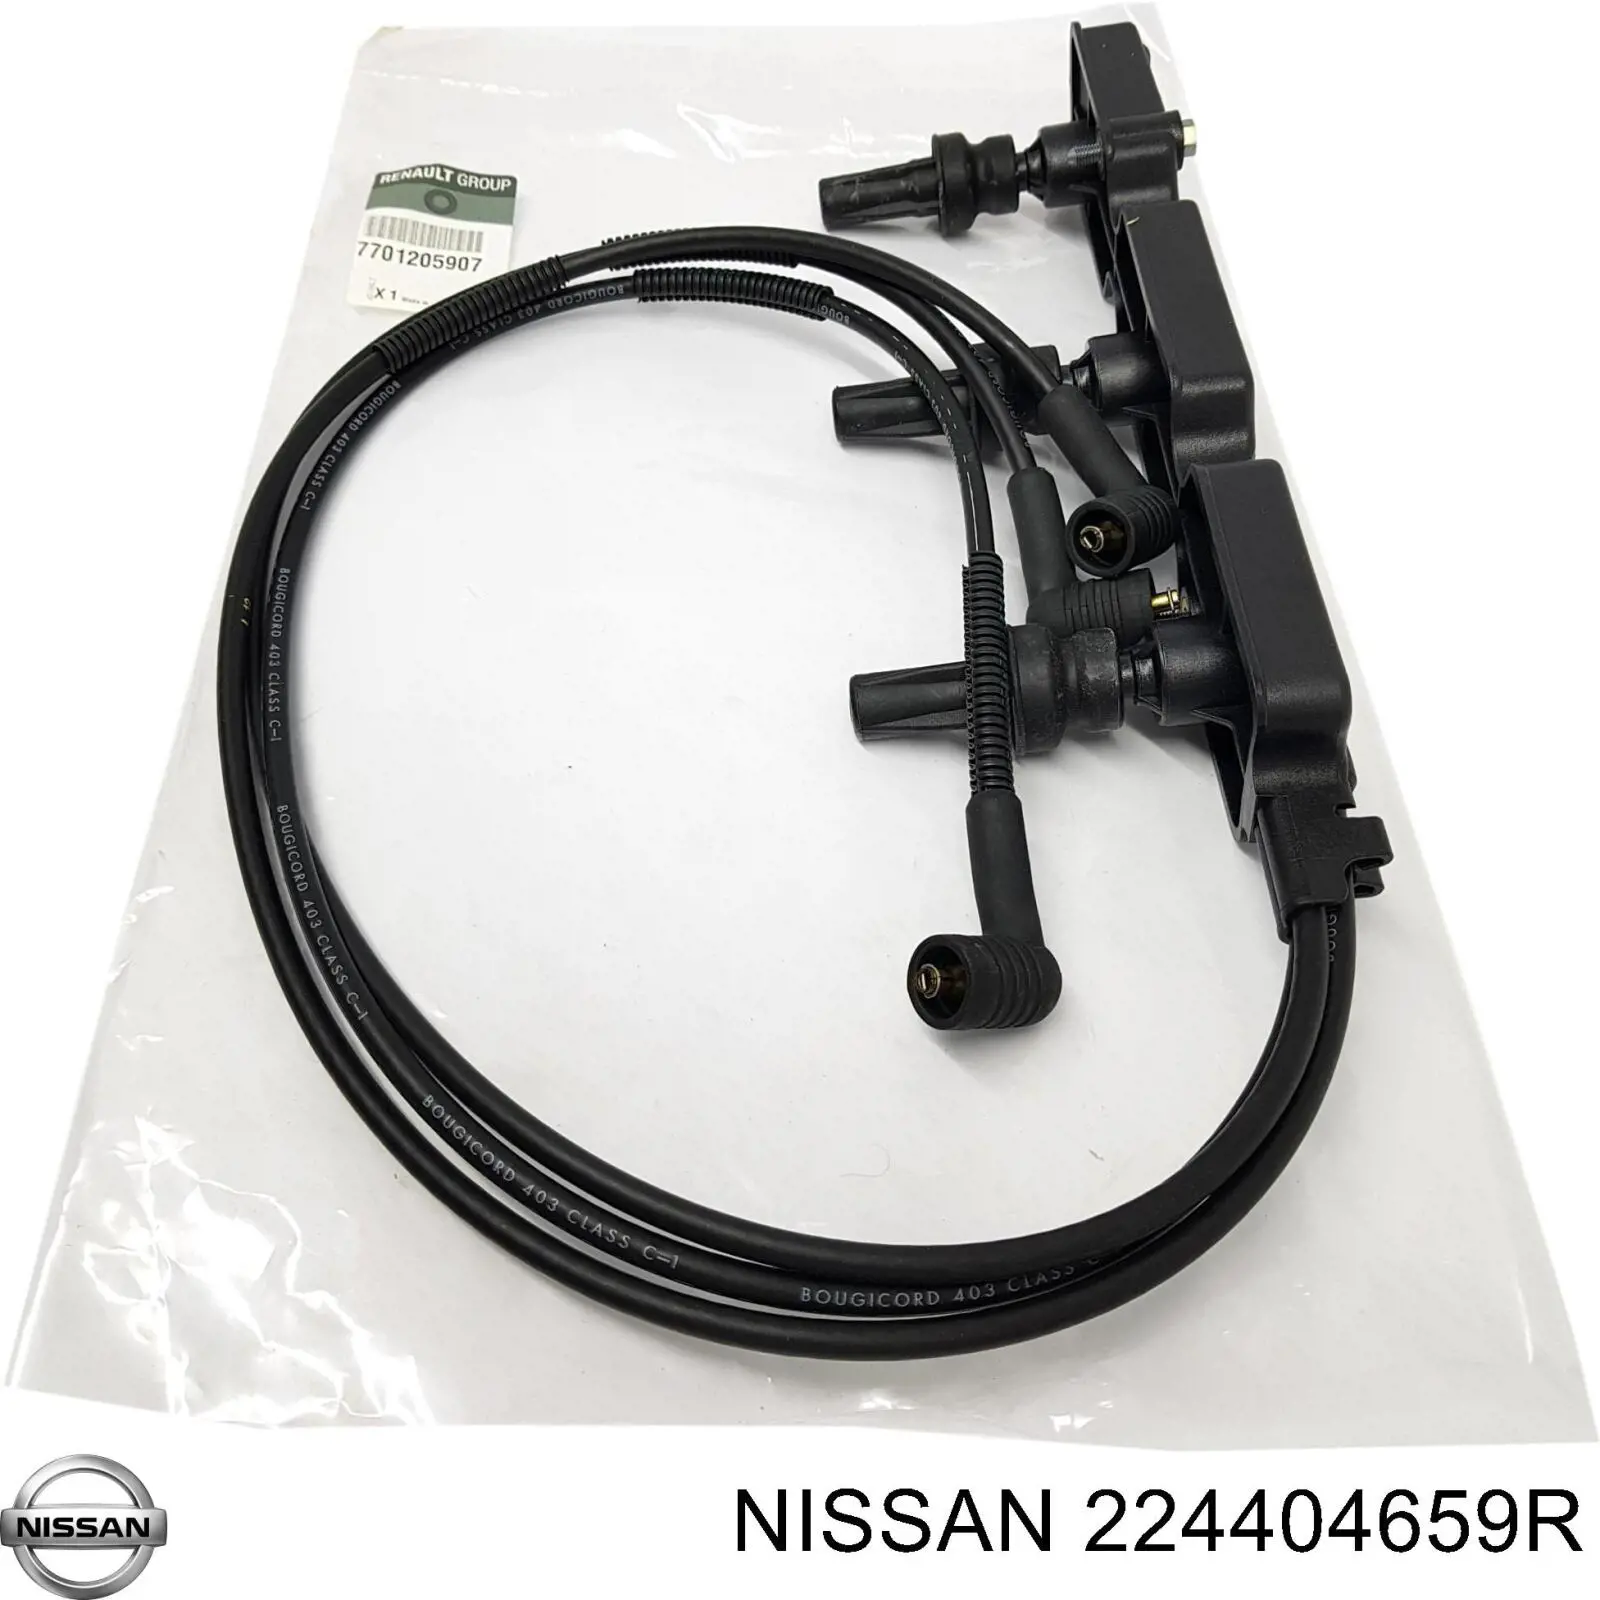 224404659R Nissan cables de bujías